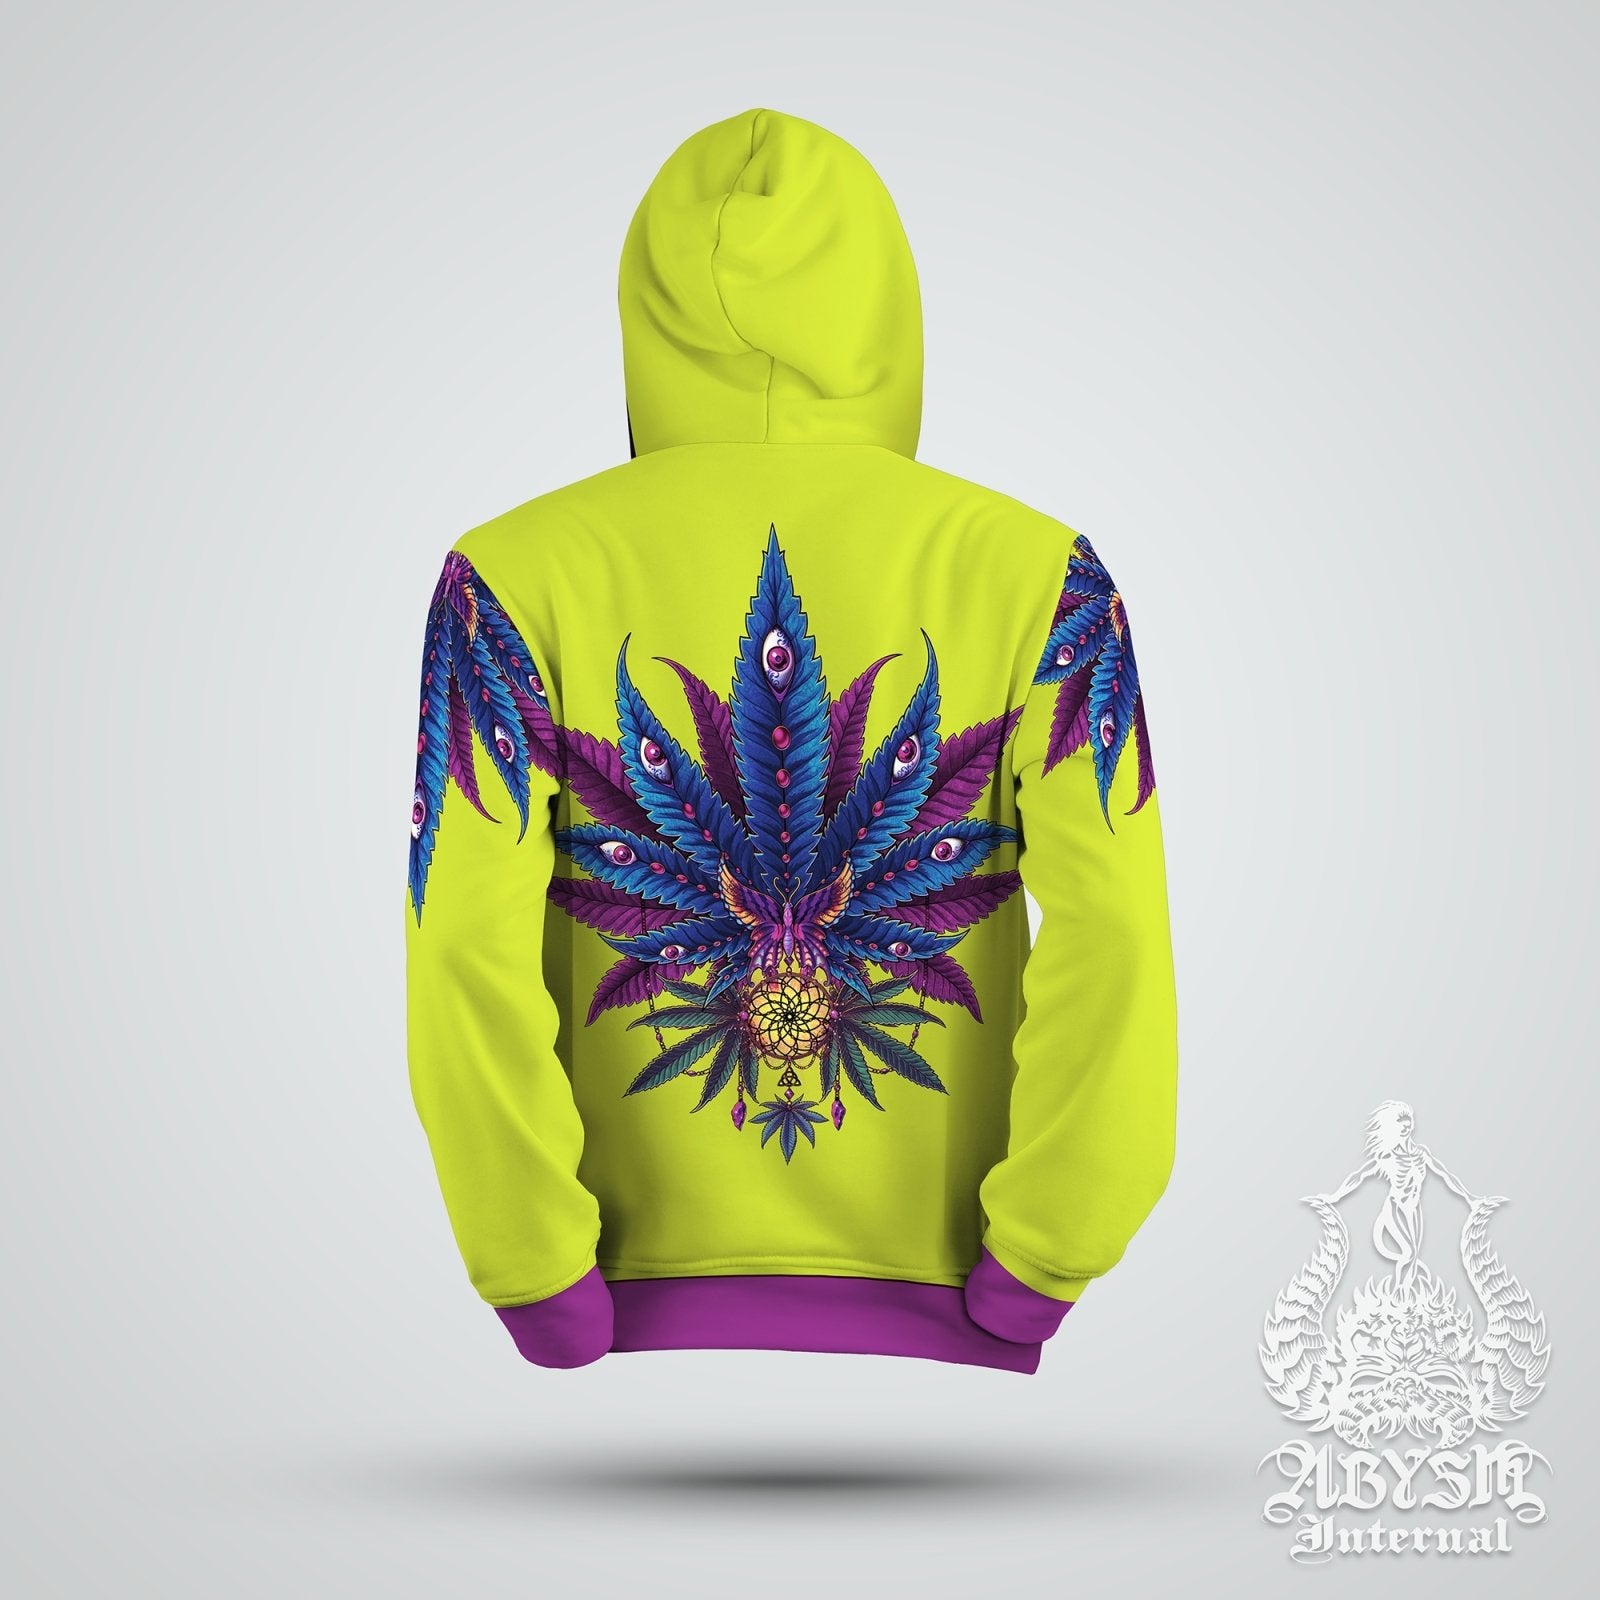 Cannabis Hoodie, Weed Festival, Trippy Outfit, Indie Streetwear, Alternative Clothing, Unisex, 420 Gift - Neon II Green, Marijuana - Abysm Internal